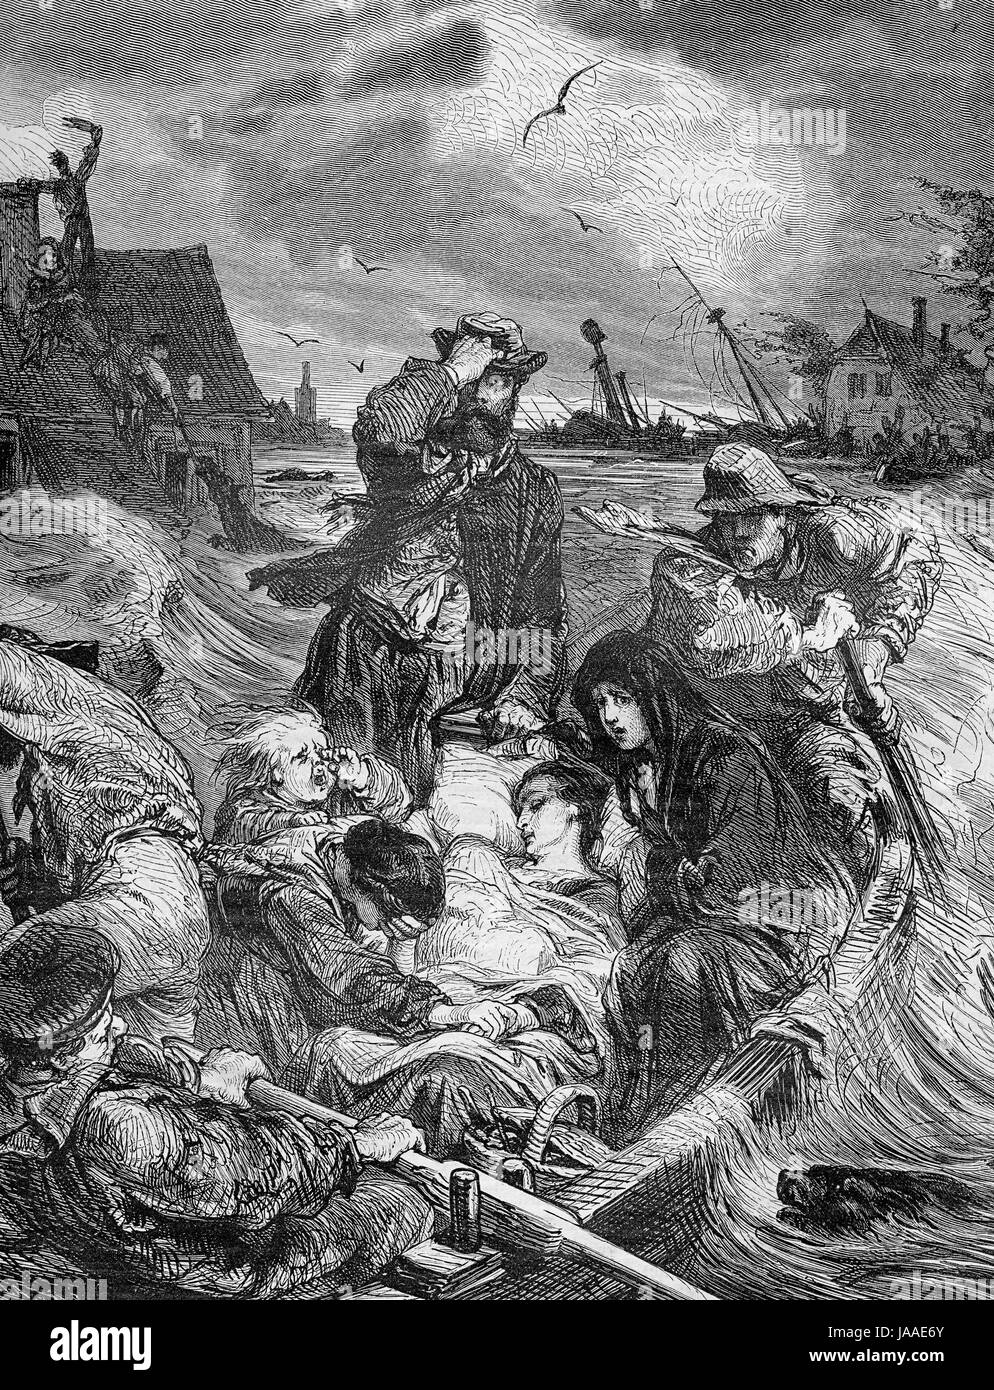 Allemagne,famille de sauvetage tempête à Zingst, gravure du XIX siècle Banque D'Images